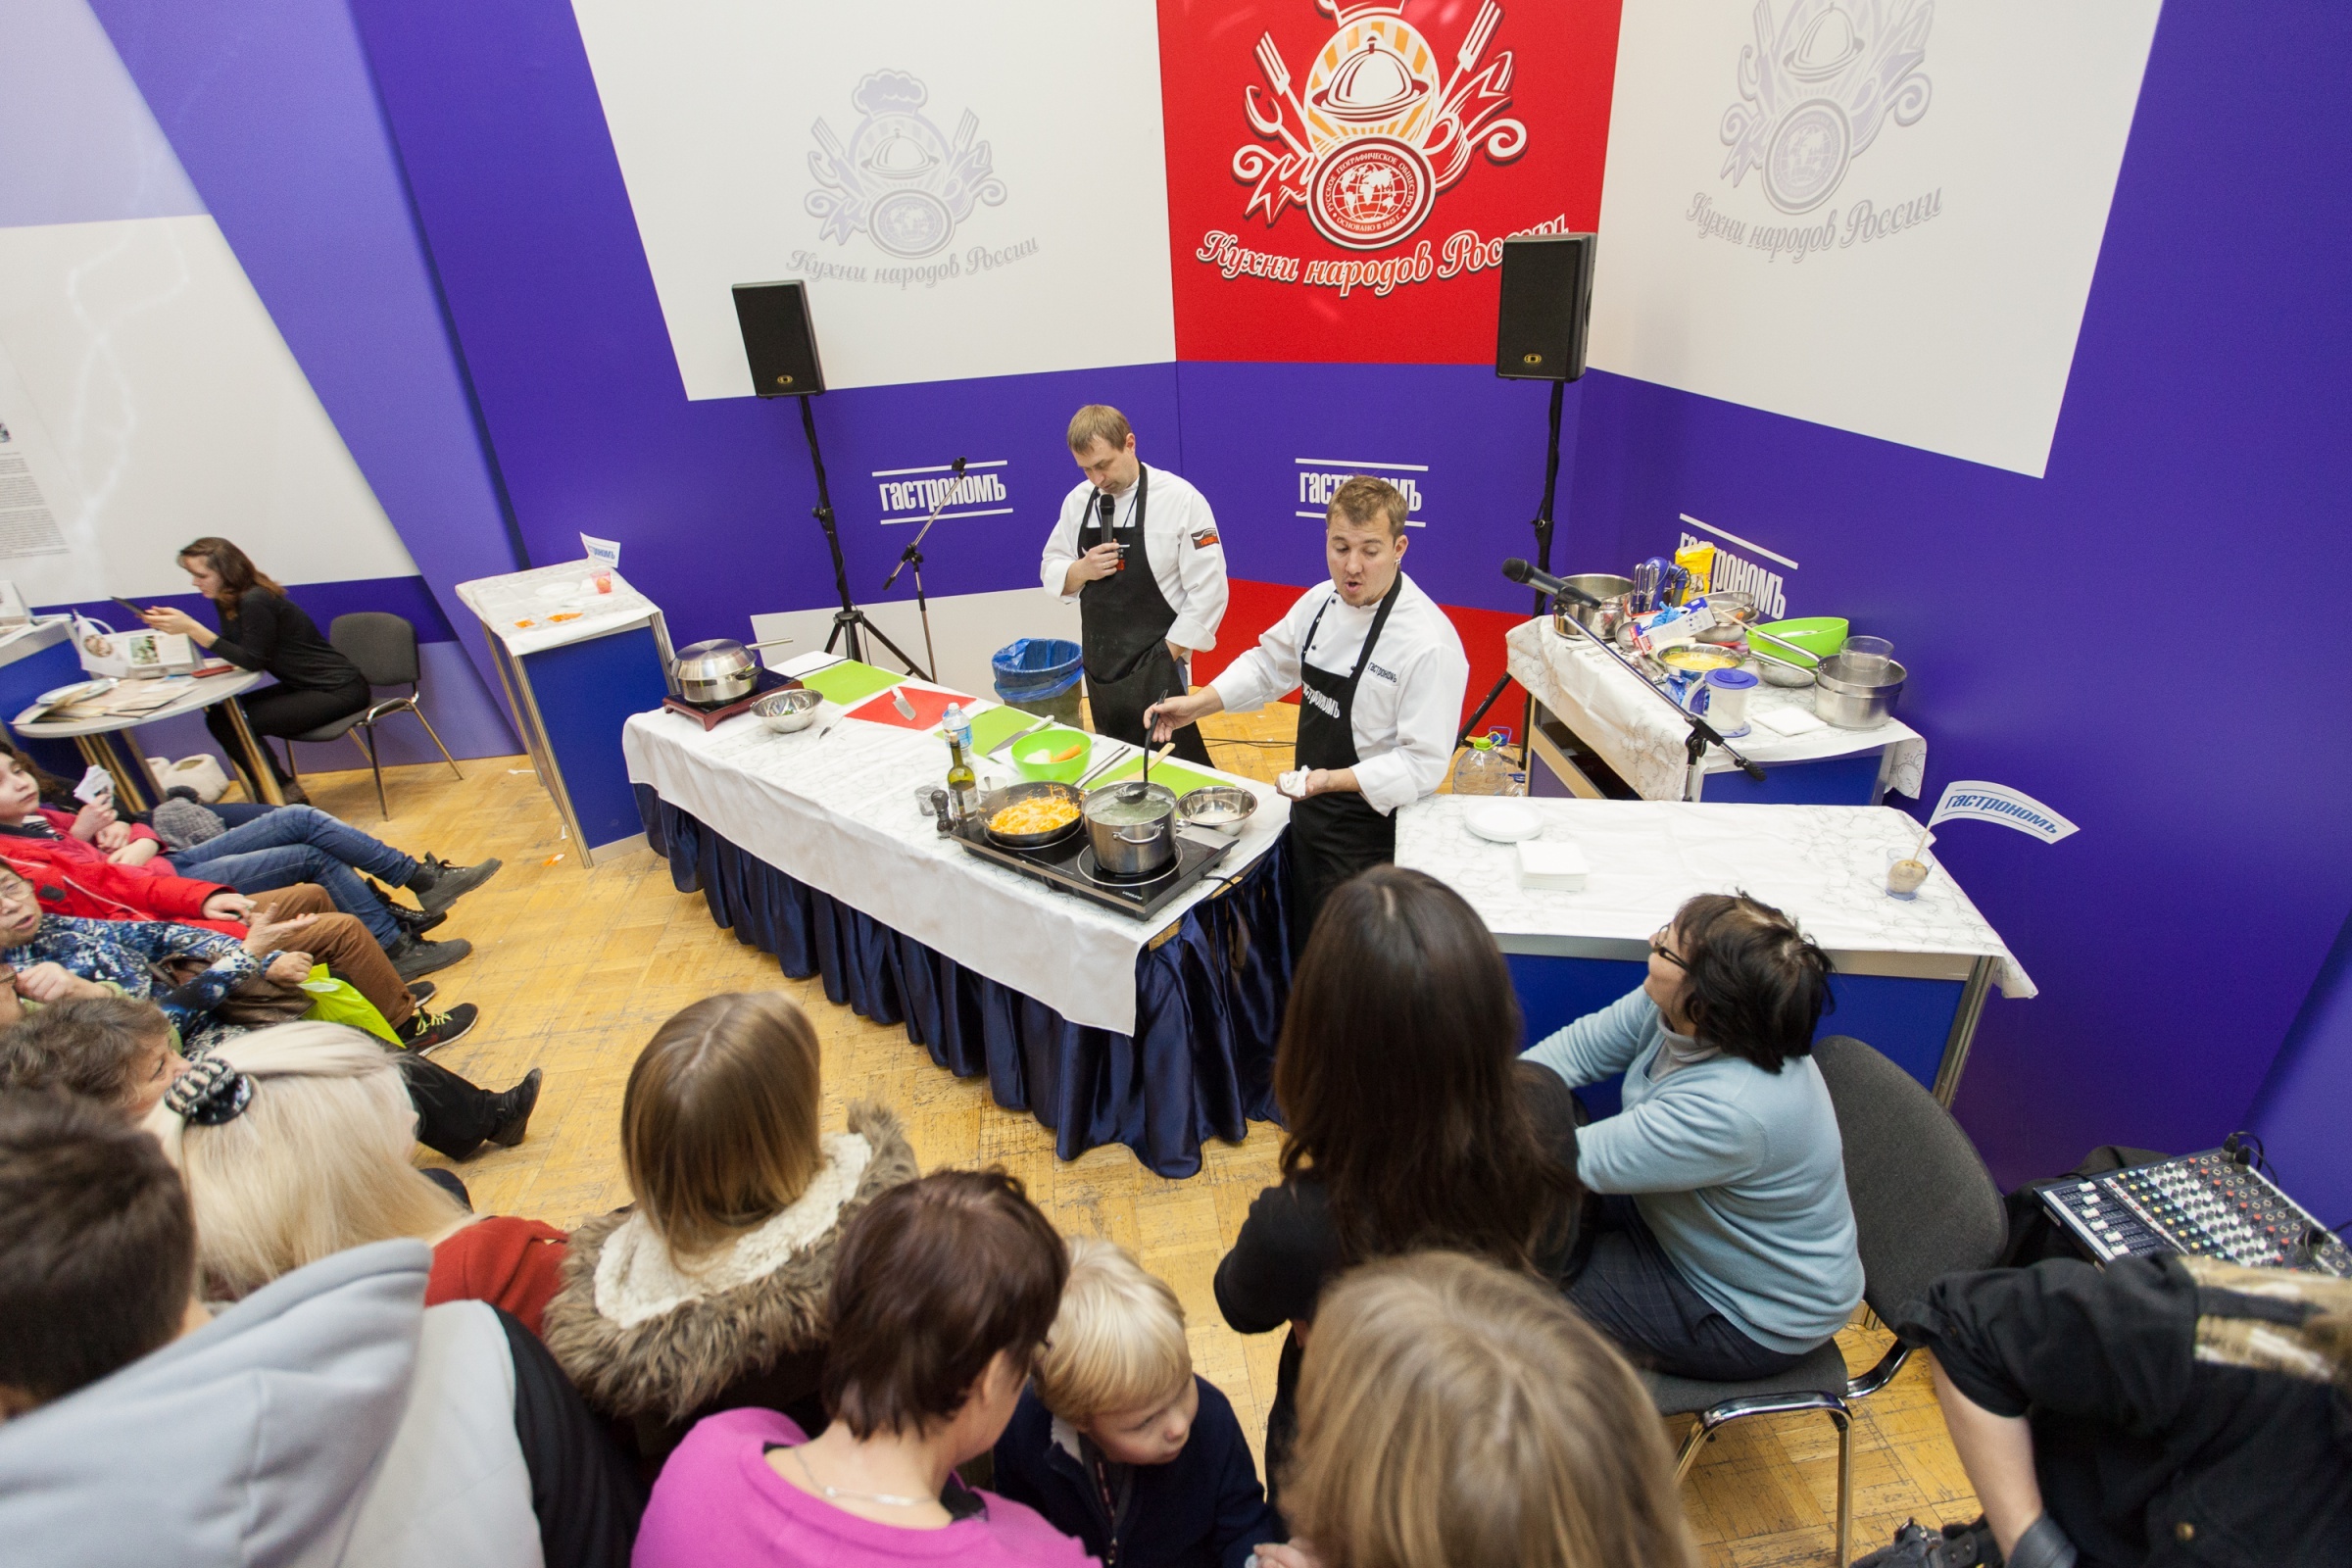 Мастер-классы проводят повара кулинарной школы журнала ''Гастроном''